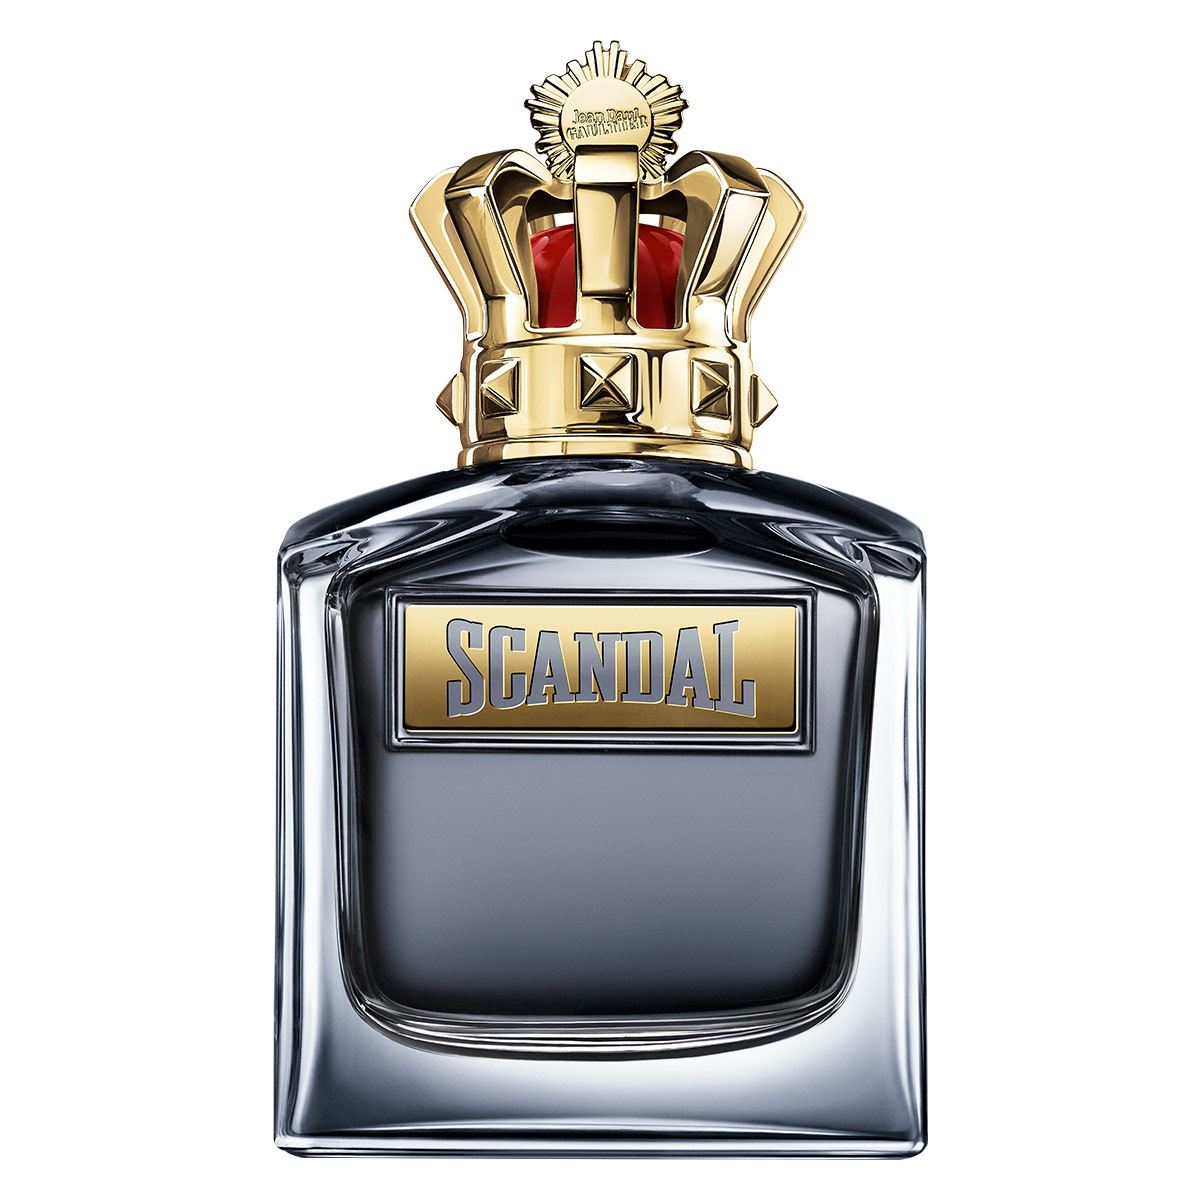 Perfumes Scandal